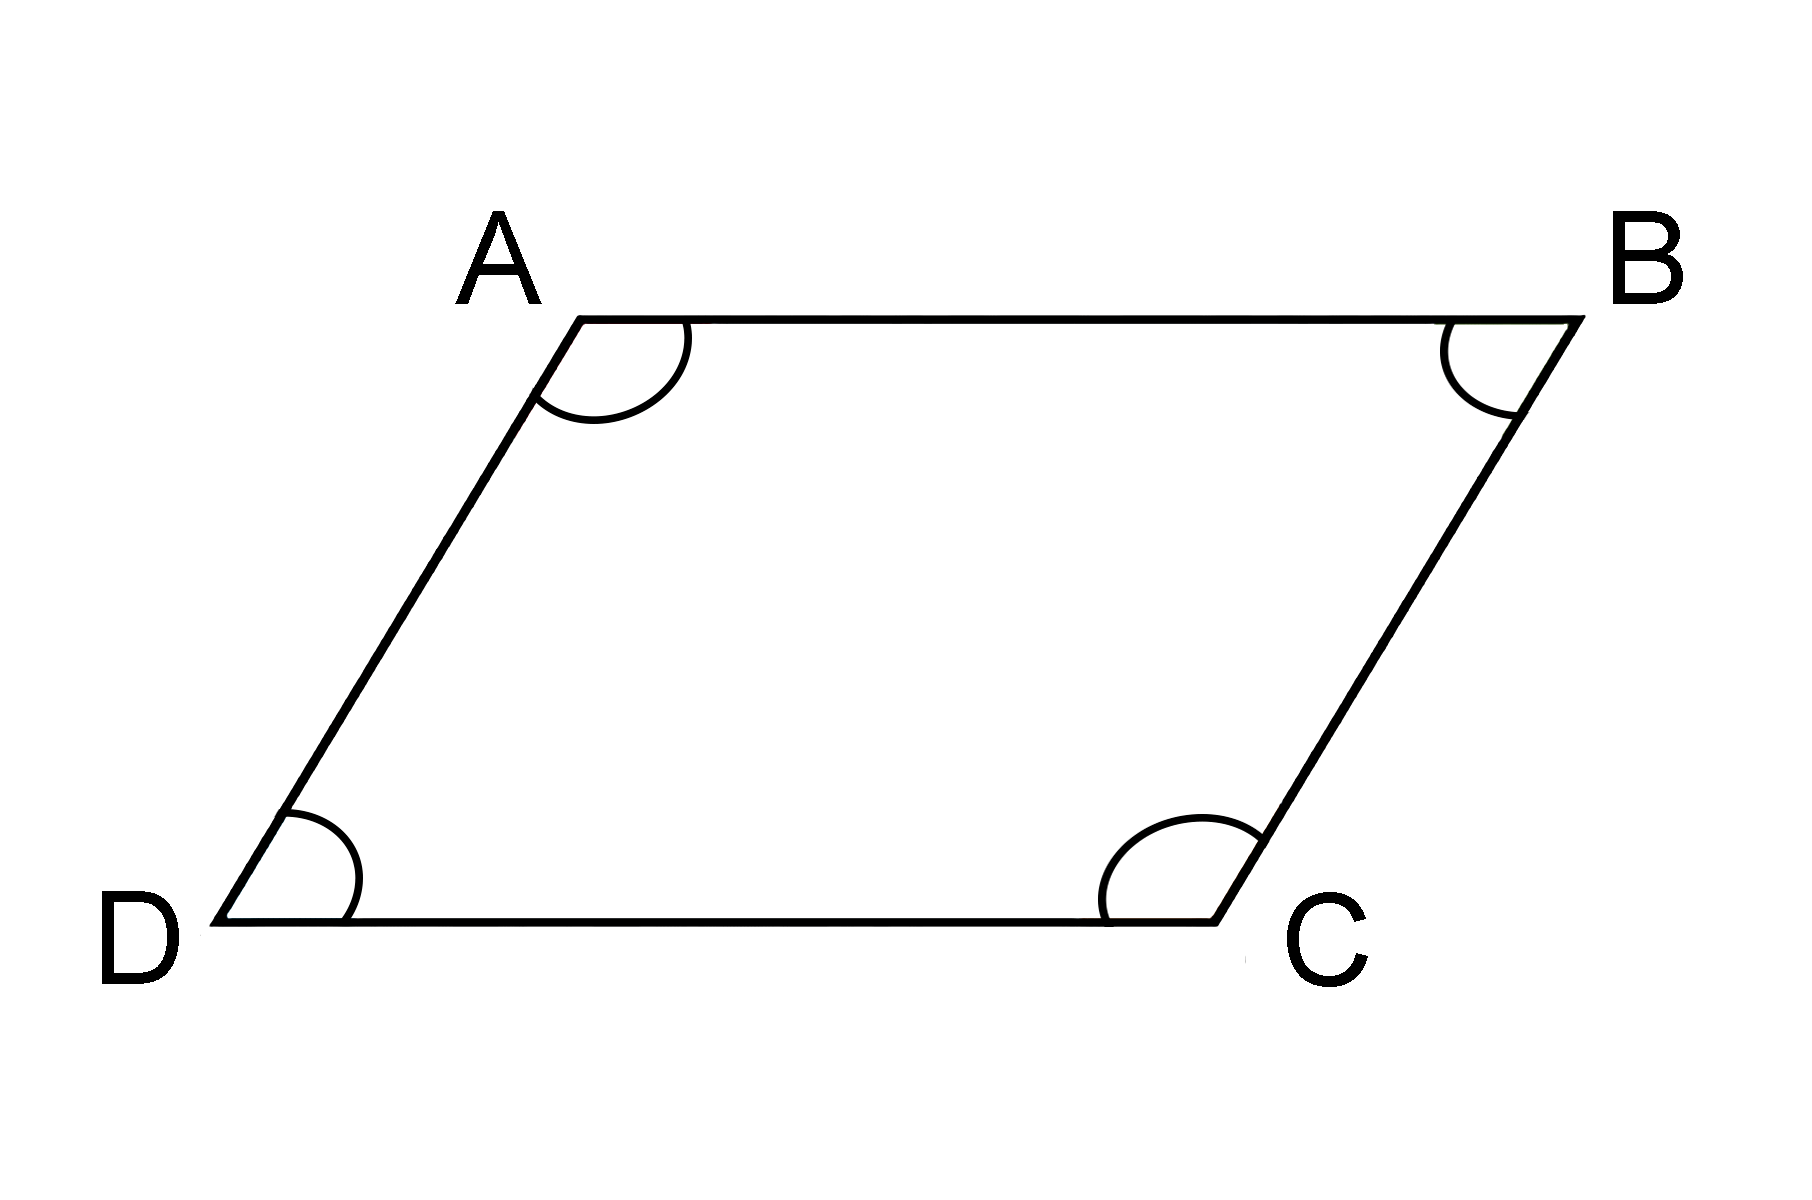 Figure geometriche - Figura geometrica piana - Parallelogramma con angoli